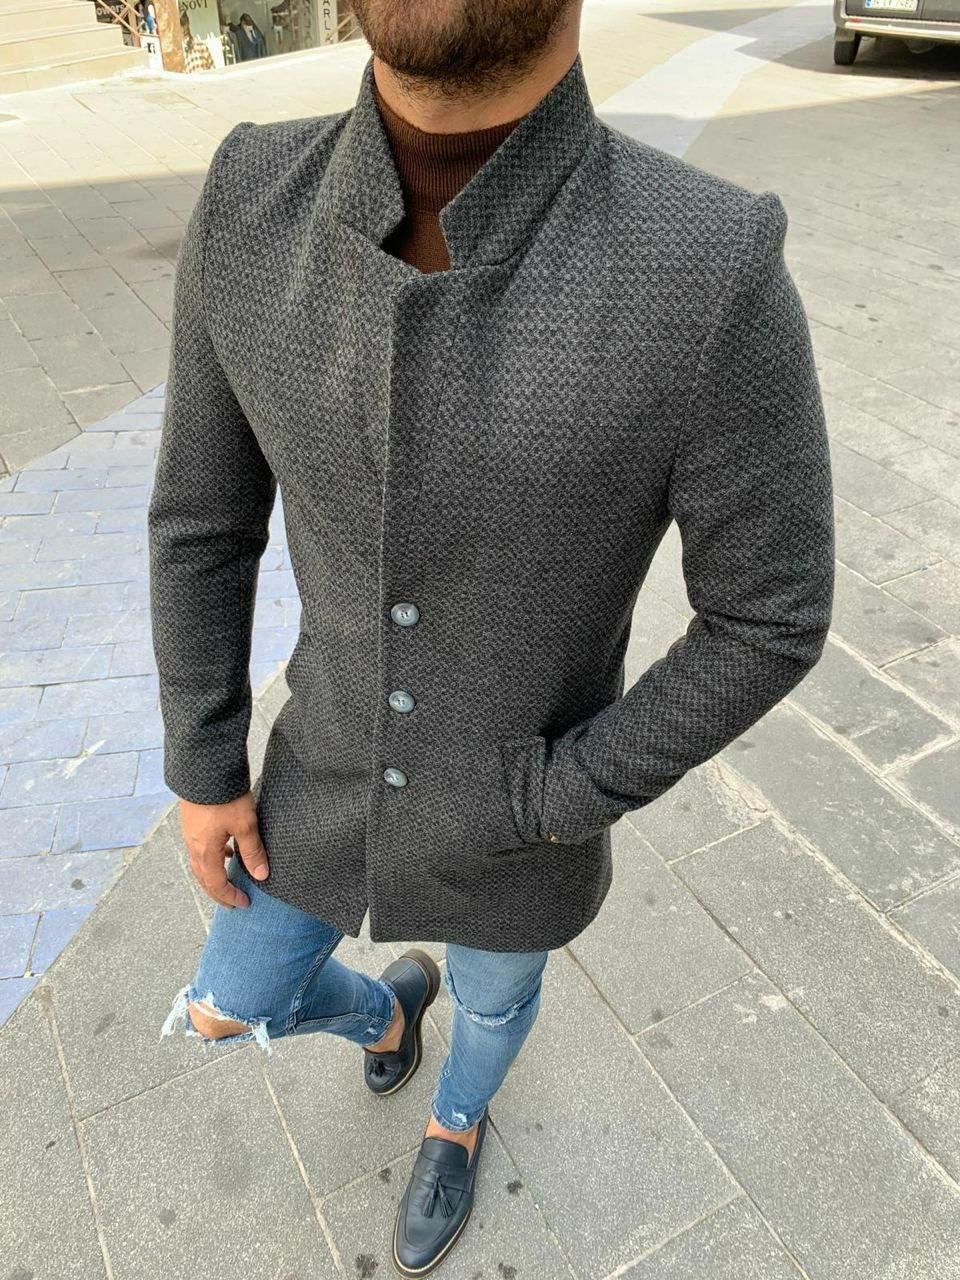 

Мужское стильное пальто (серое / клетка), Premium / Турция. Размеры в наличии. L